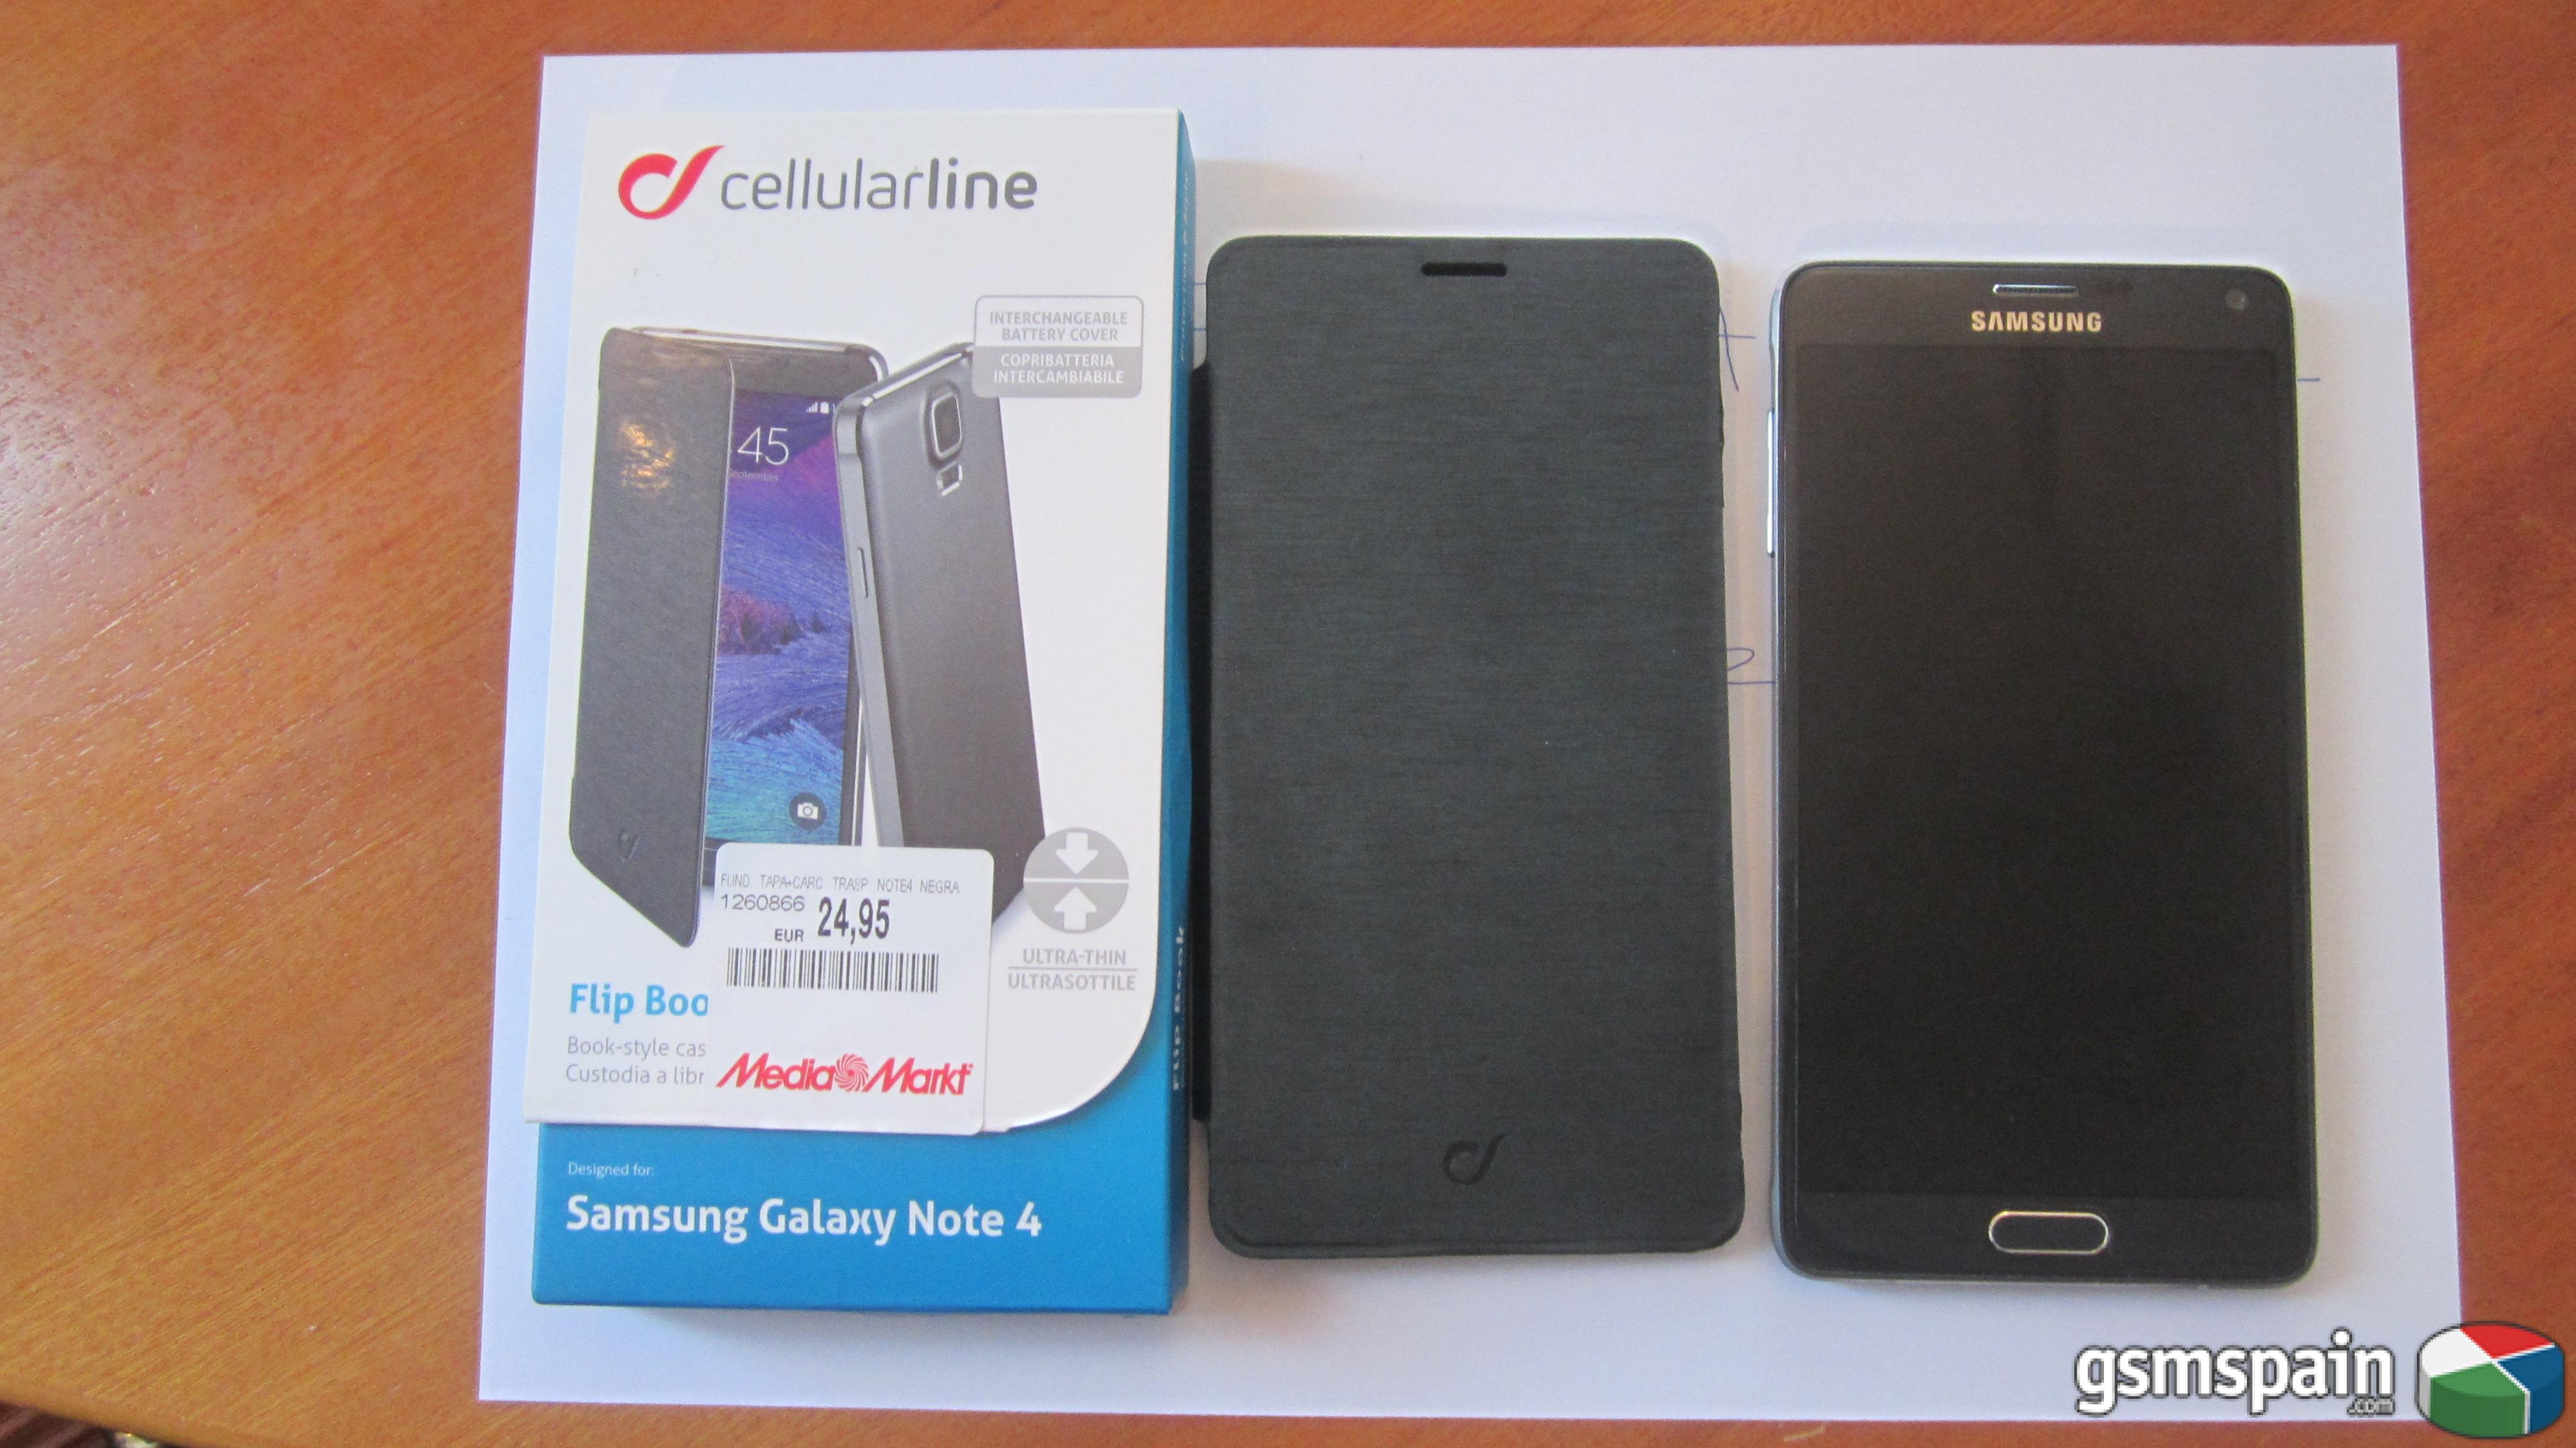 [VENDO] Samsung Galaxy Note 4 negro, libre de fbrica + extras por 320